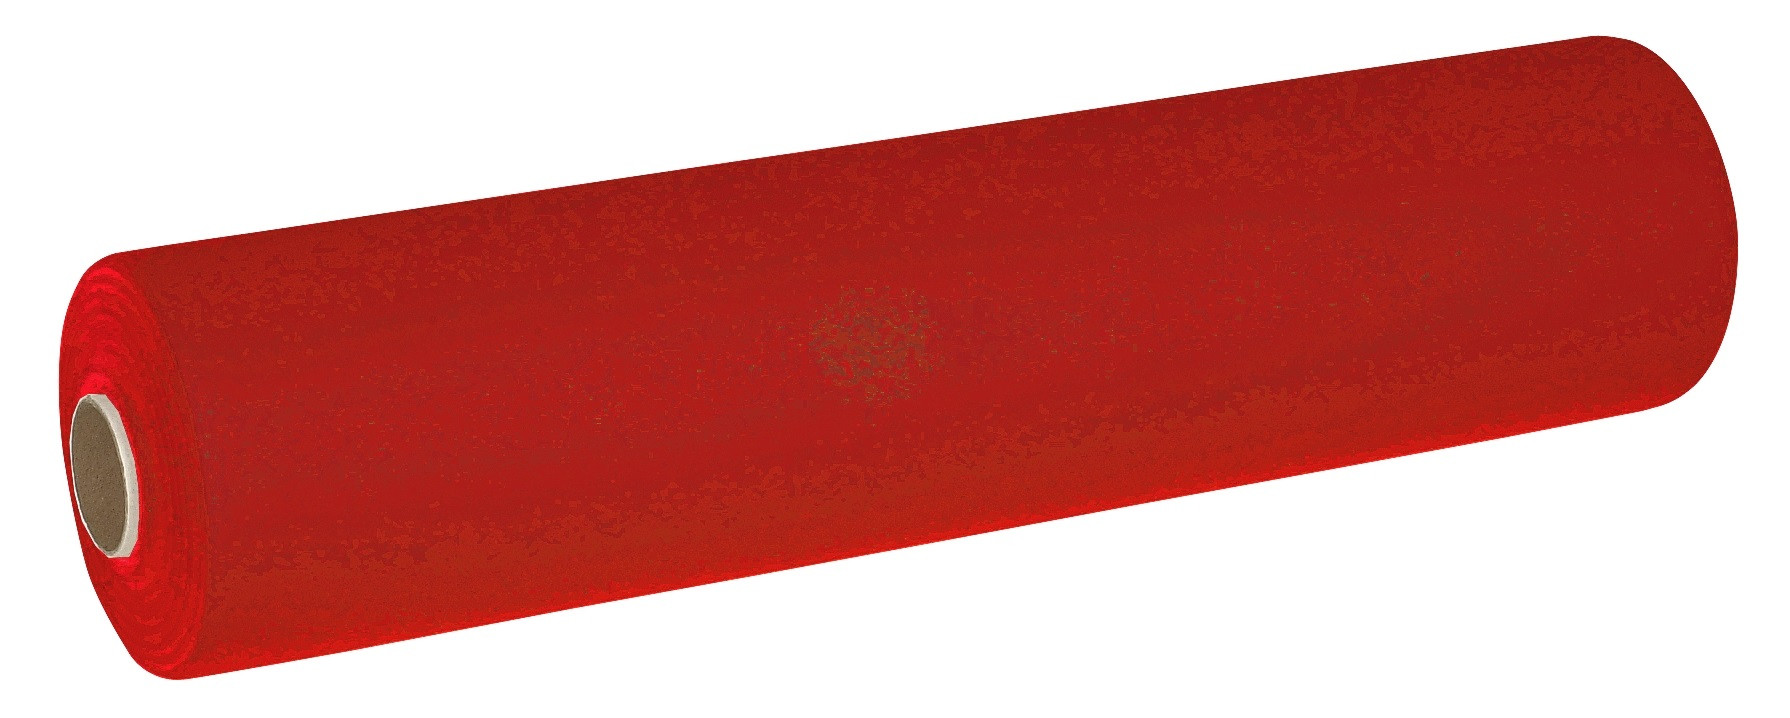 Kuvertløber Airlaid 0,4 x 24 m Rød 4 rl